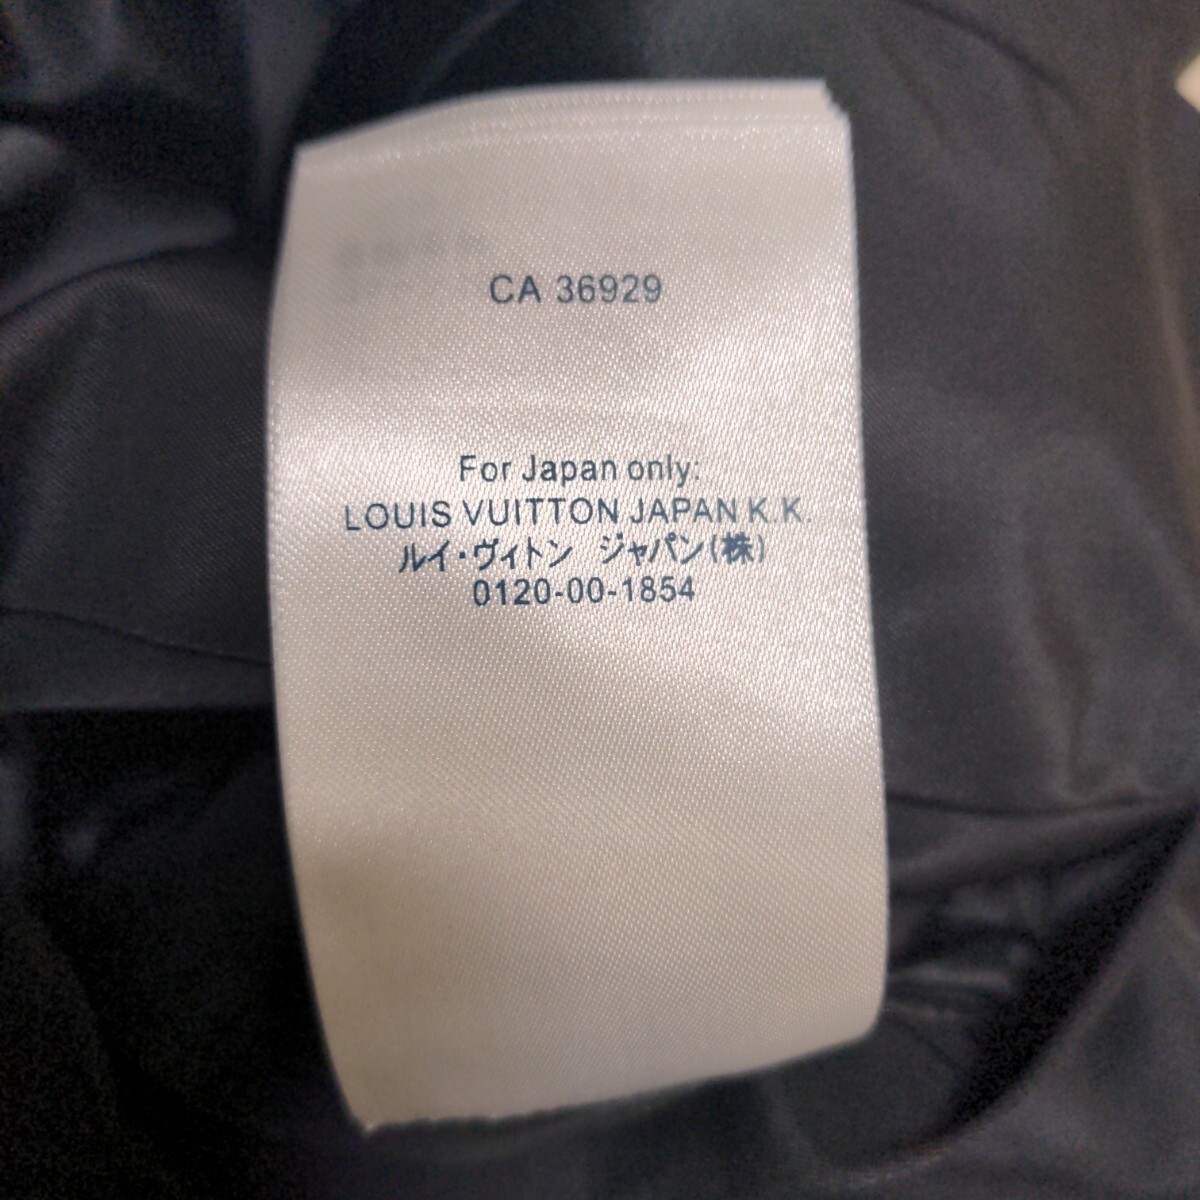  произведена чистка,1 иен старт!LOUISVUITTON коуч жакет L размер va- Jill *a blow Louis Vuitton Jacket